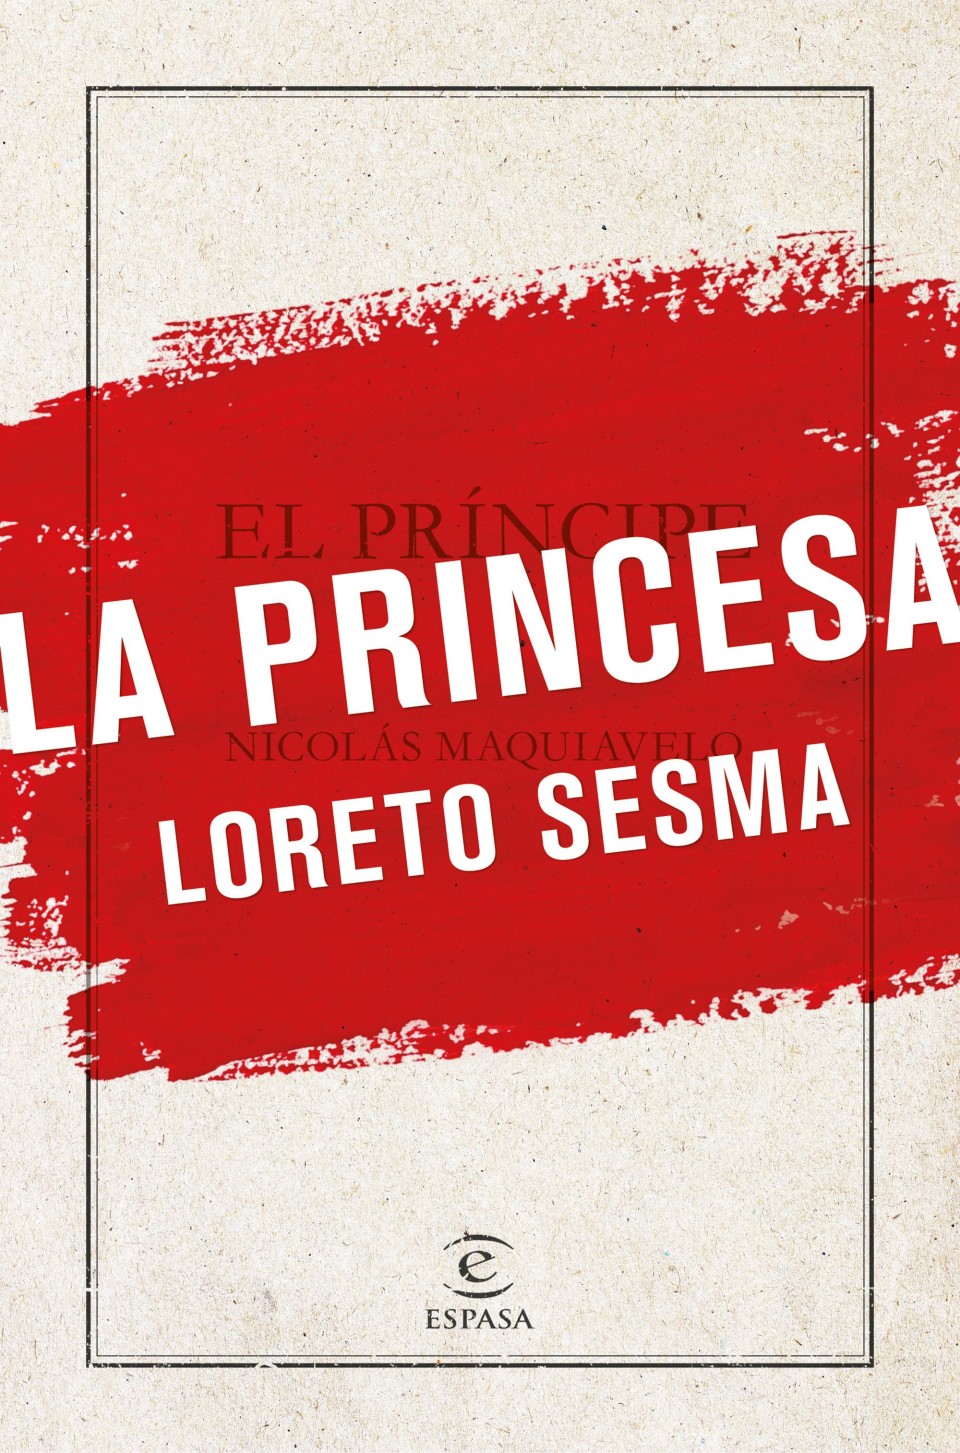 Imagen Portada 'La Princesa' de Loreto Sesma